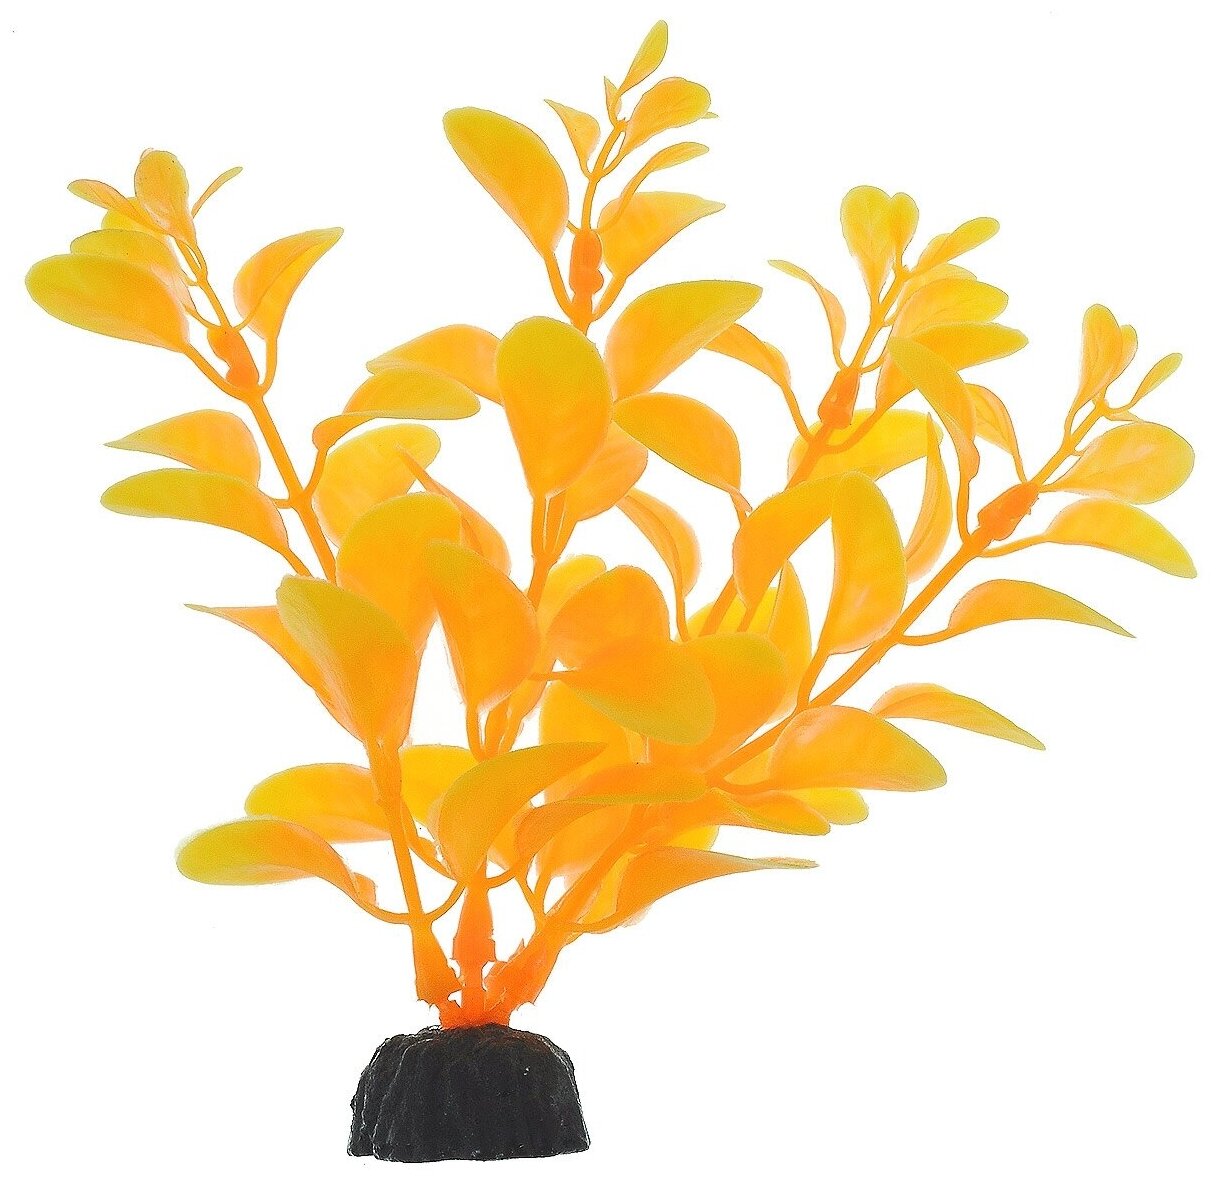 Растение для аквариума пластиковое Barbus Plant 012/10 Людвигия ярко-желтая 10 см (1 шт)